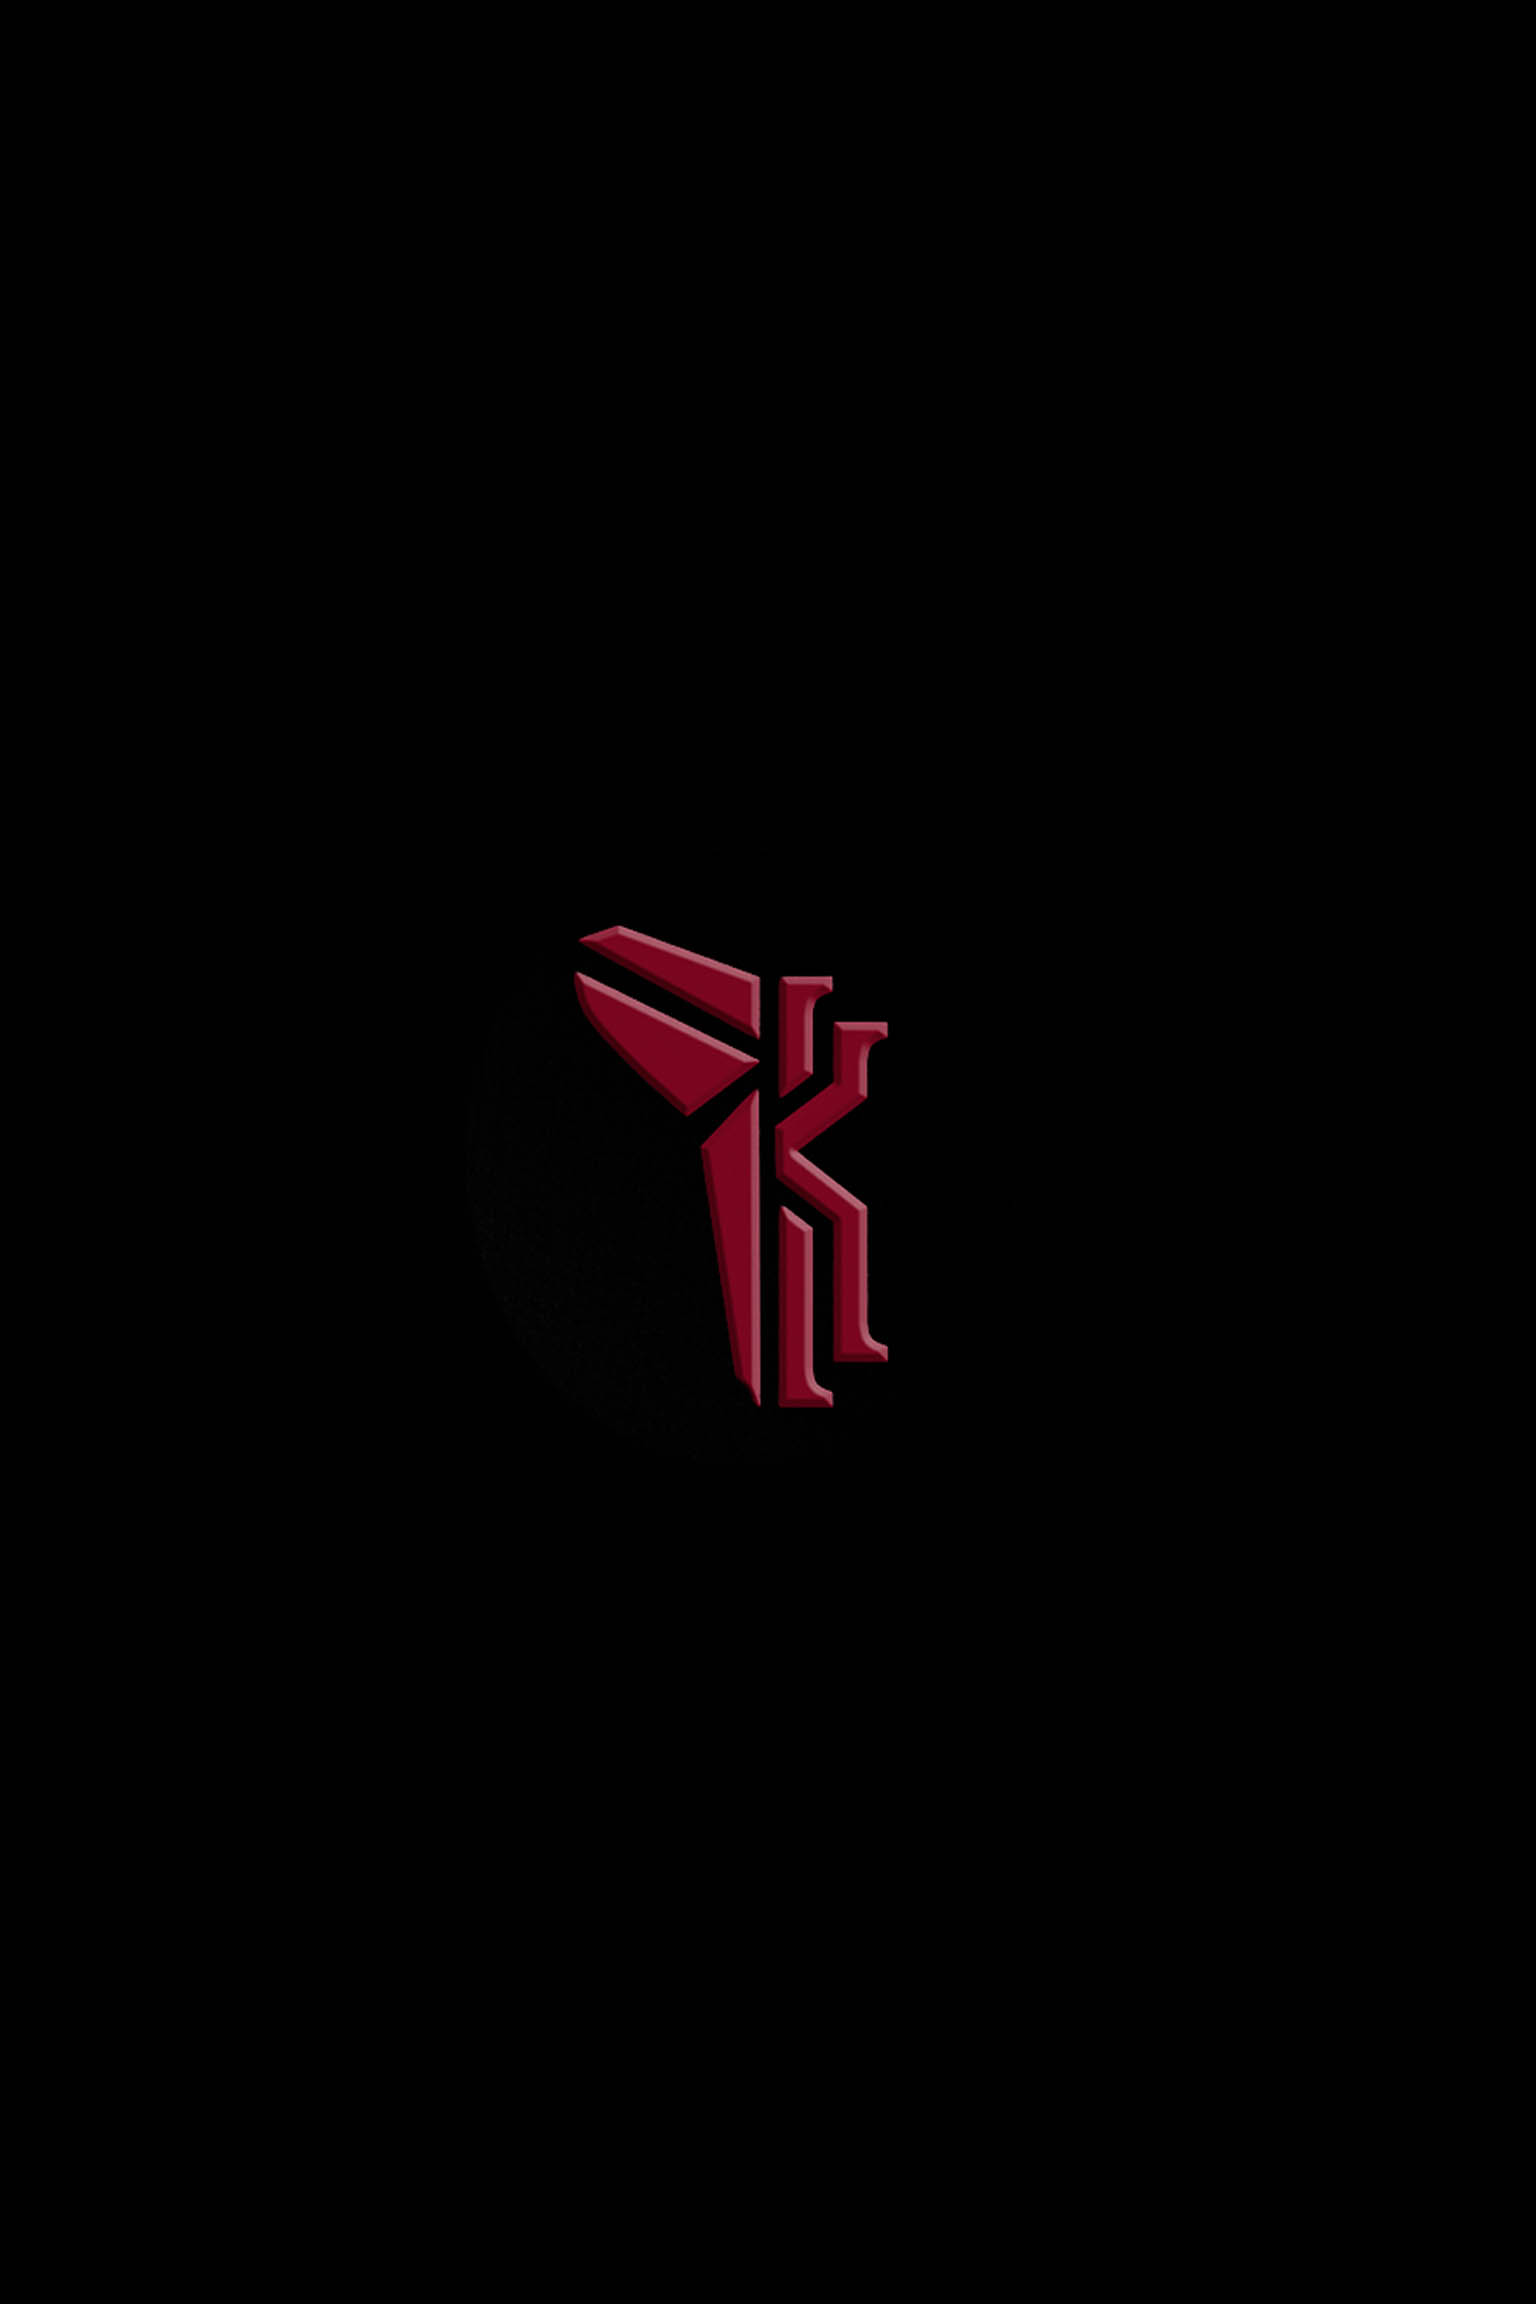 kyrie's logo